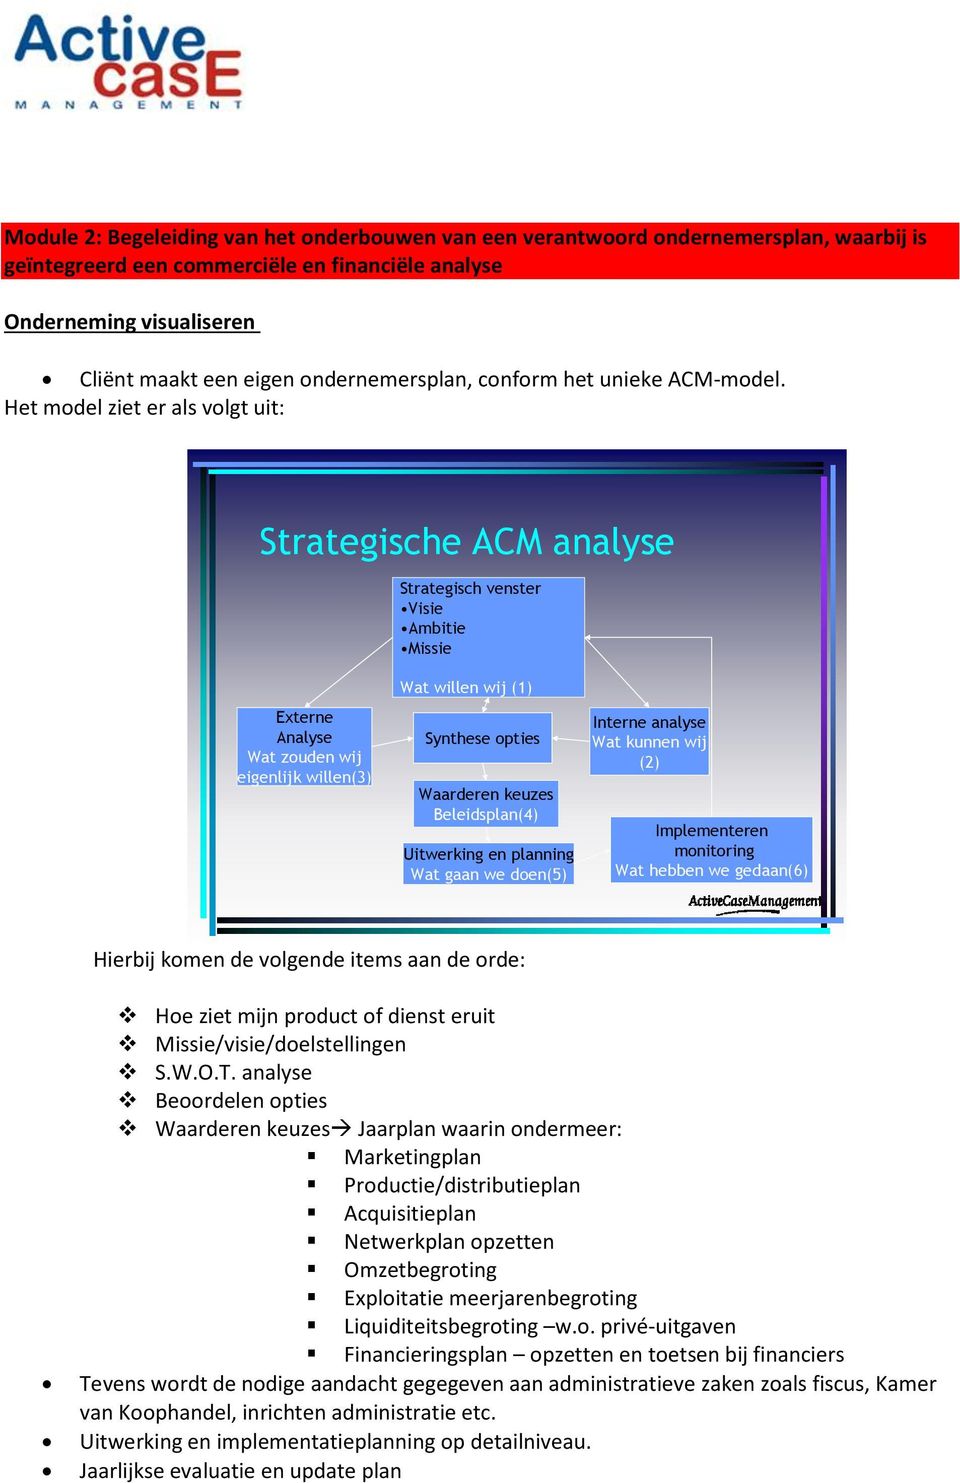 Het model ziet er als volgt uit: Strategische ACM analyse Strategisch venster Visie Ambitie Missie Externe Analyse Wat zouden wij eigenlijk willen(3) Wat willen wij (1) Synthese opties Waarderen